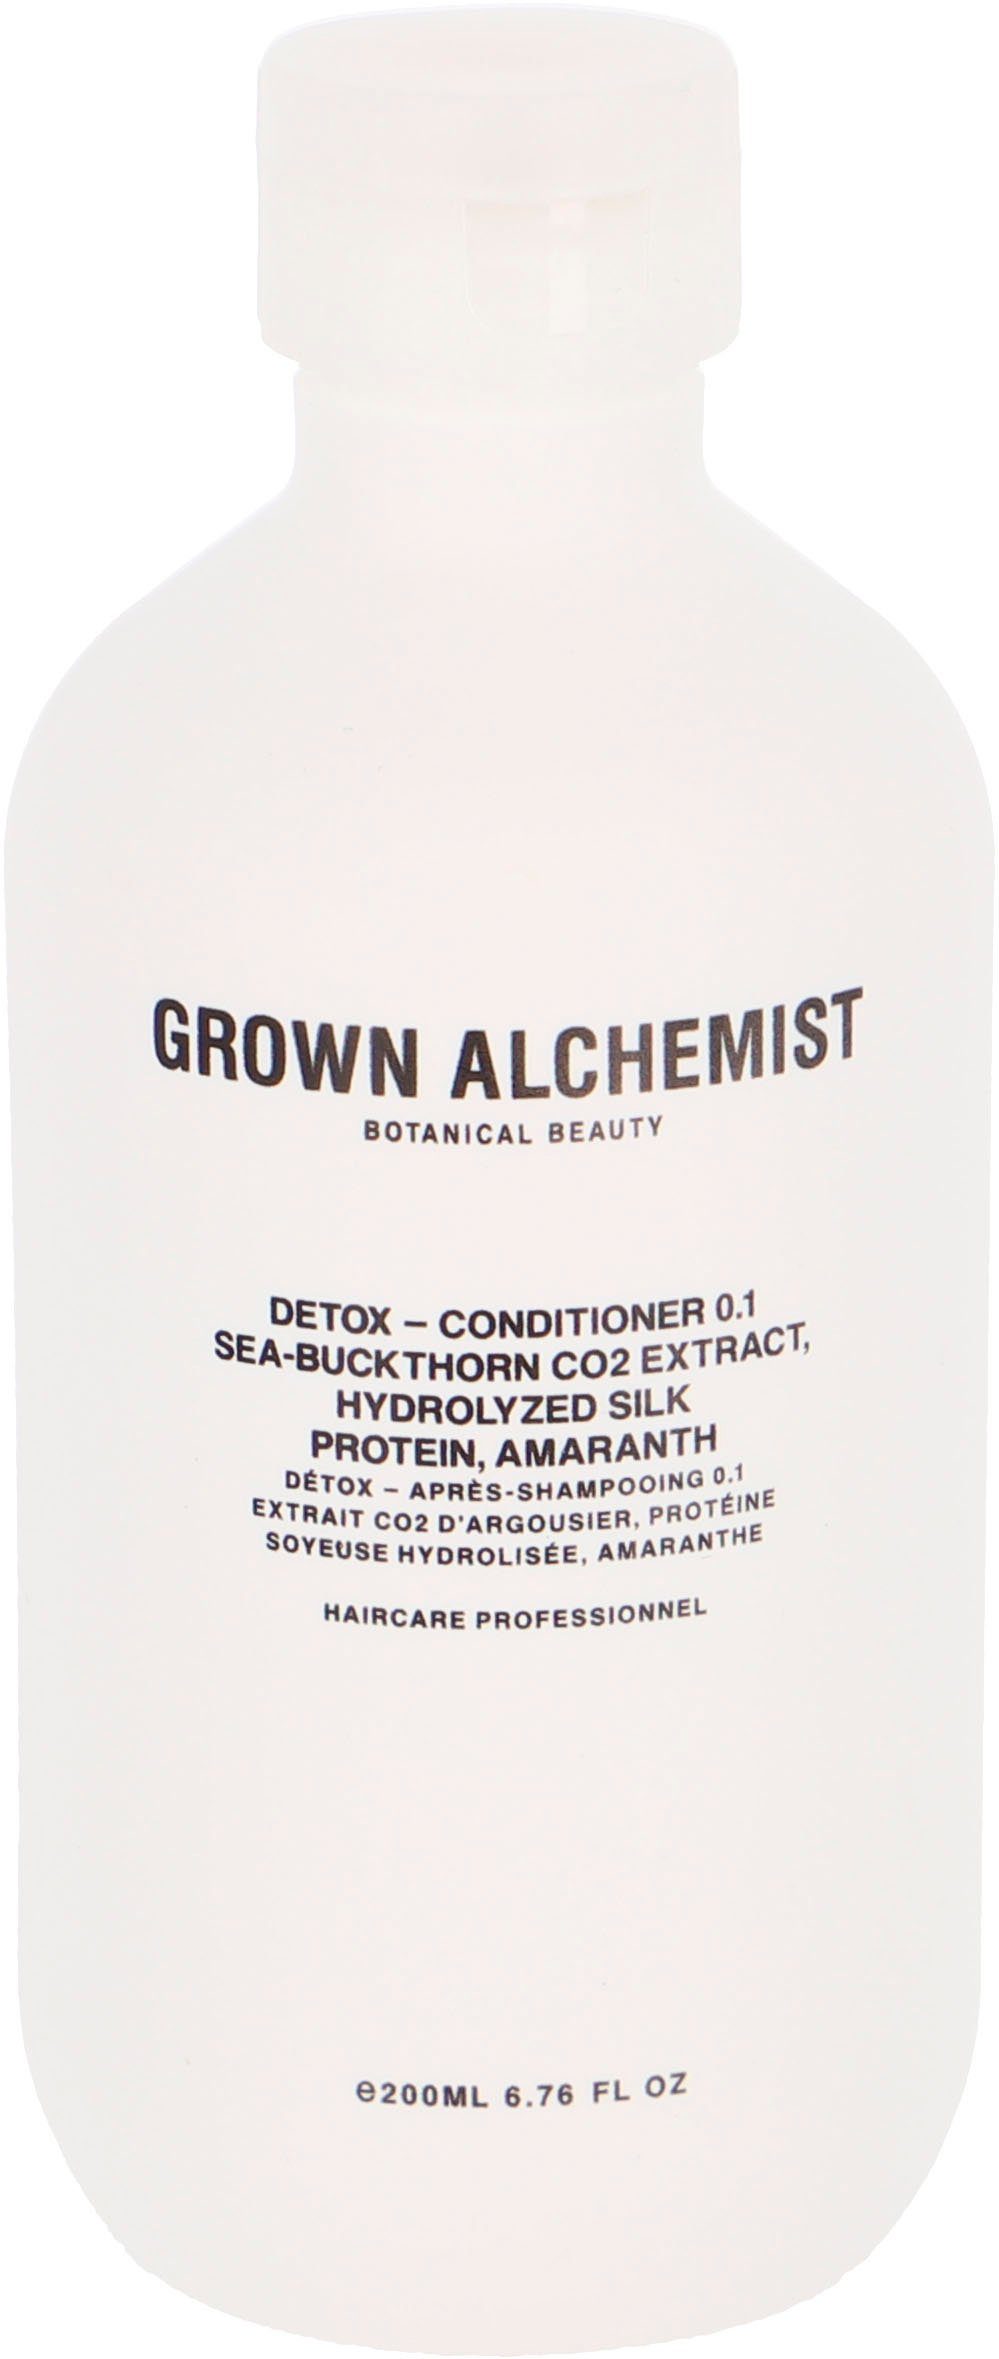 ALCHEMIST ml Sea-Buckthorn GROWN 0.1, 500 Amaranth Detox Protein, CO2 Extract, Hydrolyzed - Conditioner Haarspülung Silk